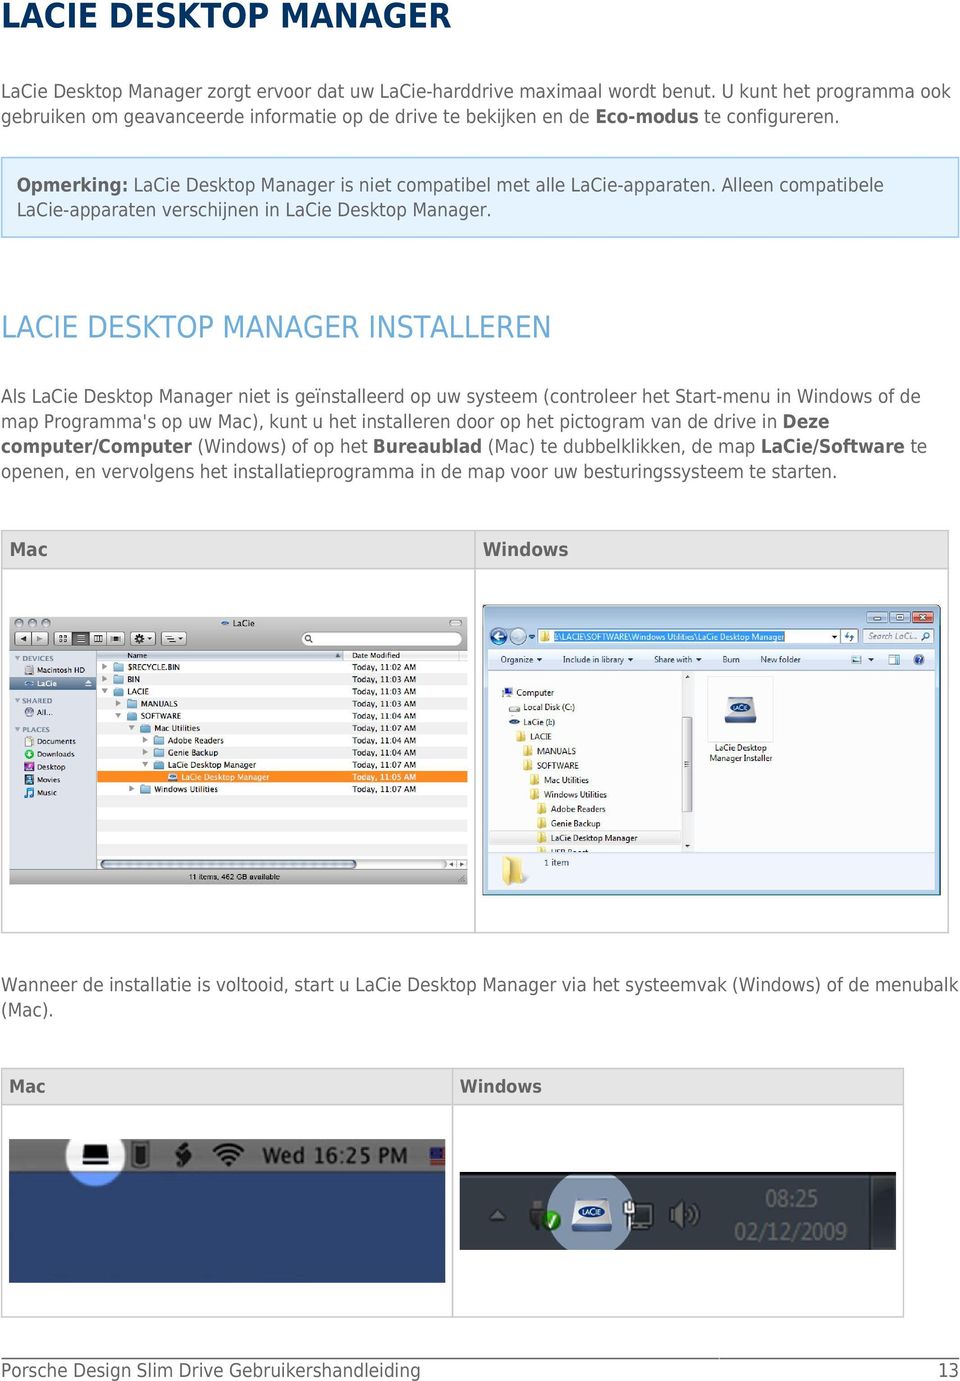 Alleen compatibele LaCie-apparaten verschijnen in LaCie Desktop Manager.